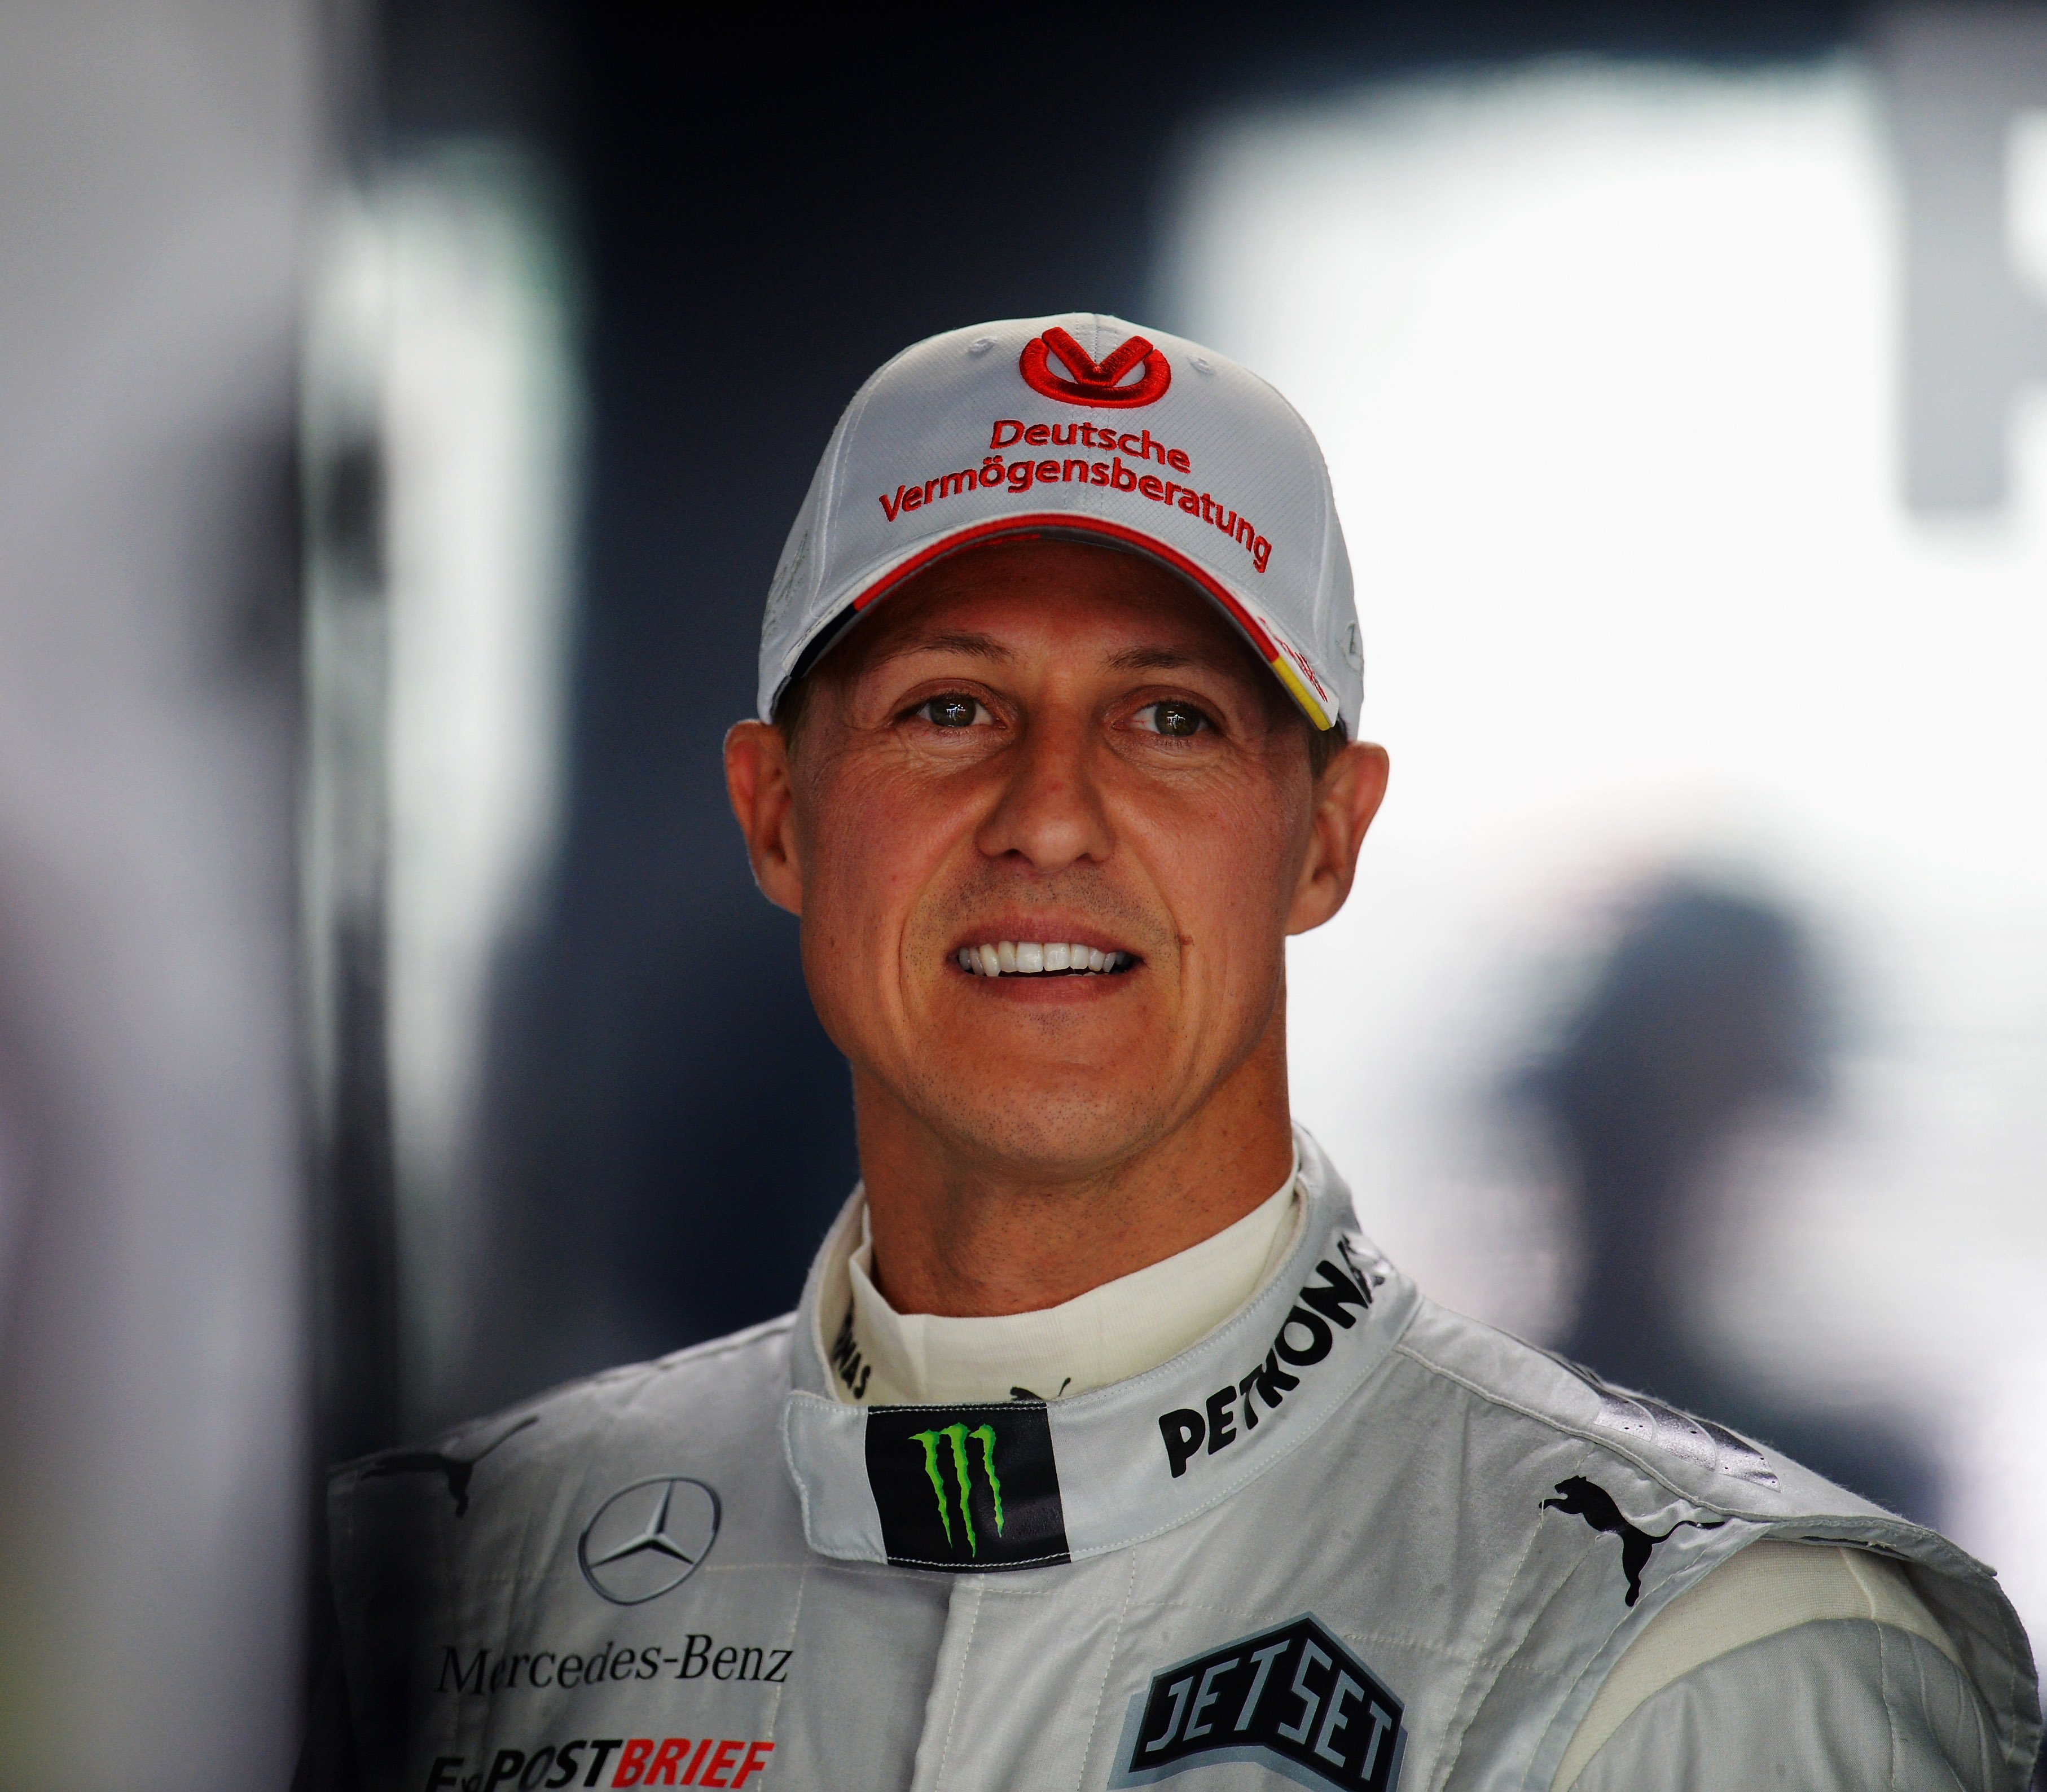 Michael Schumacher aus Deutschland und Mercedes GP bereitet sich darauf vor, während des Trainings für den Grand Prix von Deutschland am 20. Juli 2012 auf dem Hockenheimring in Hockenheim zu fahren. | Quelle: Getty Images